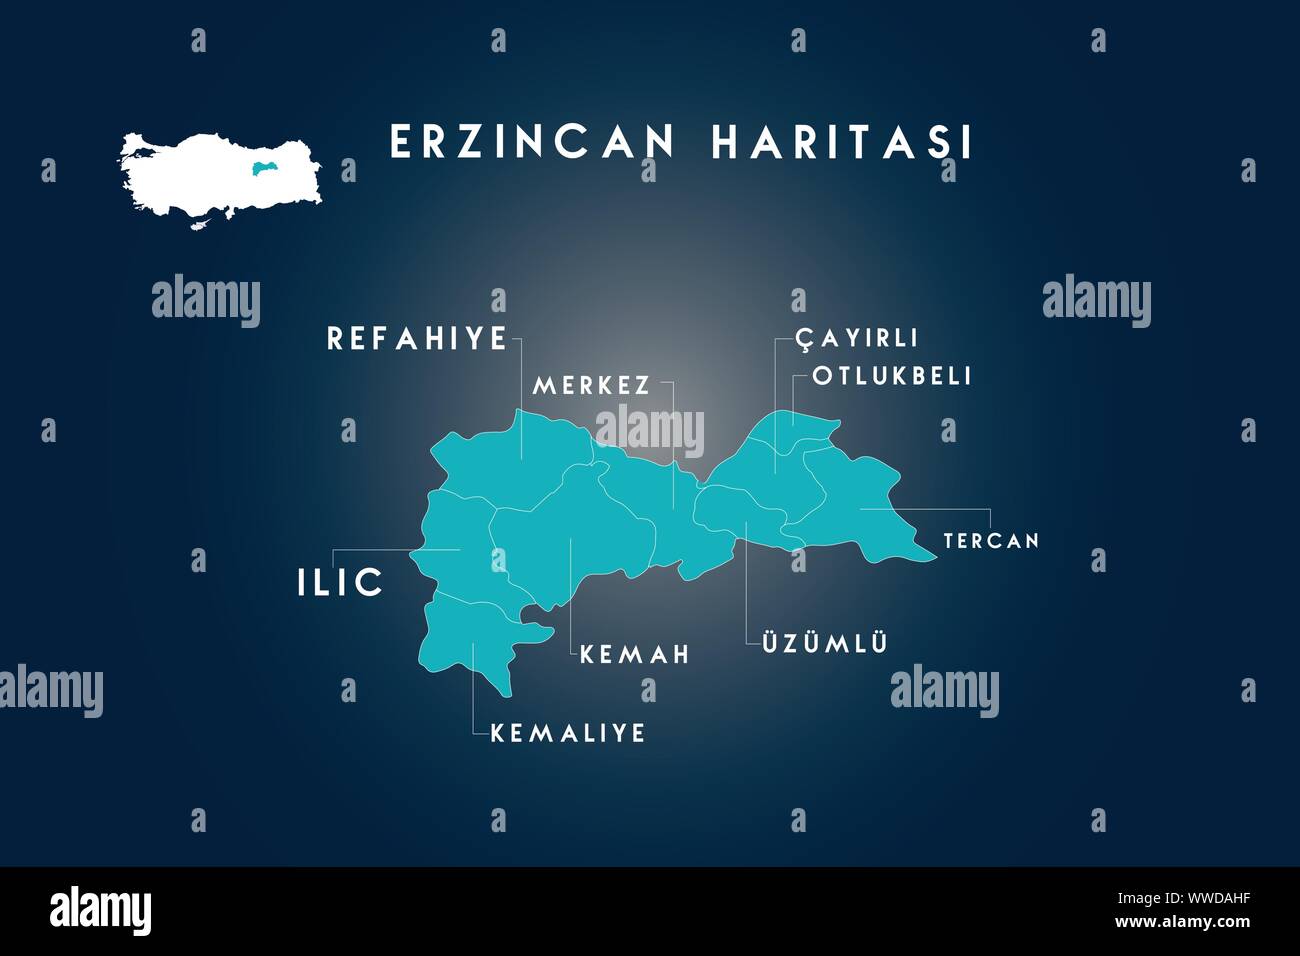 Erzincan districts refahiye, ilic, kemaliye, kemah, uzumlu, cayirli, otlukbeli, tercan map, Turkey Stock Vector